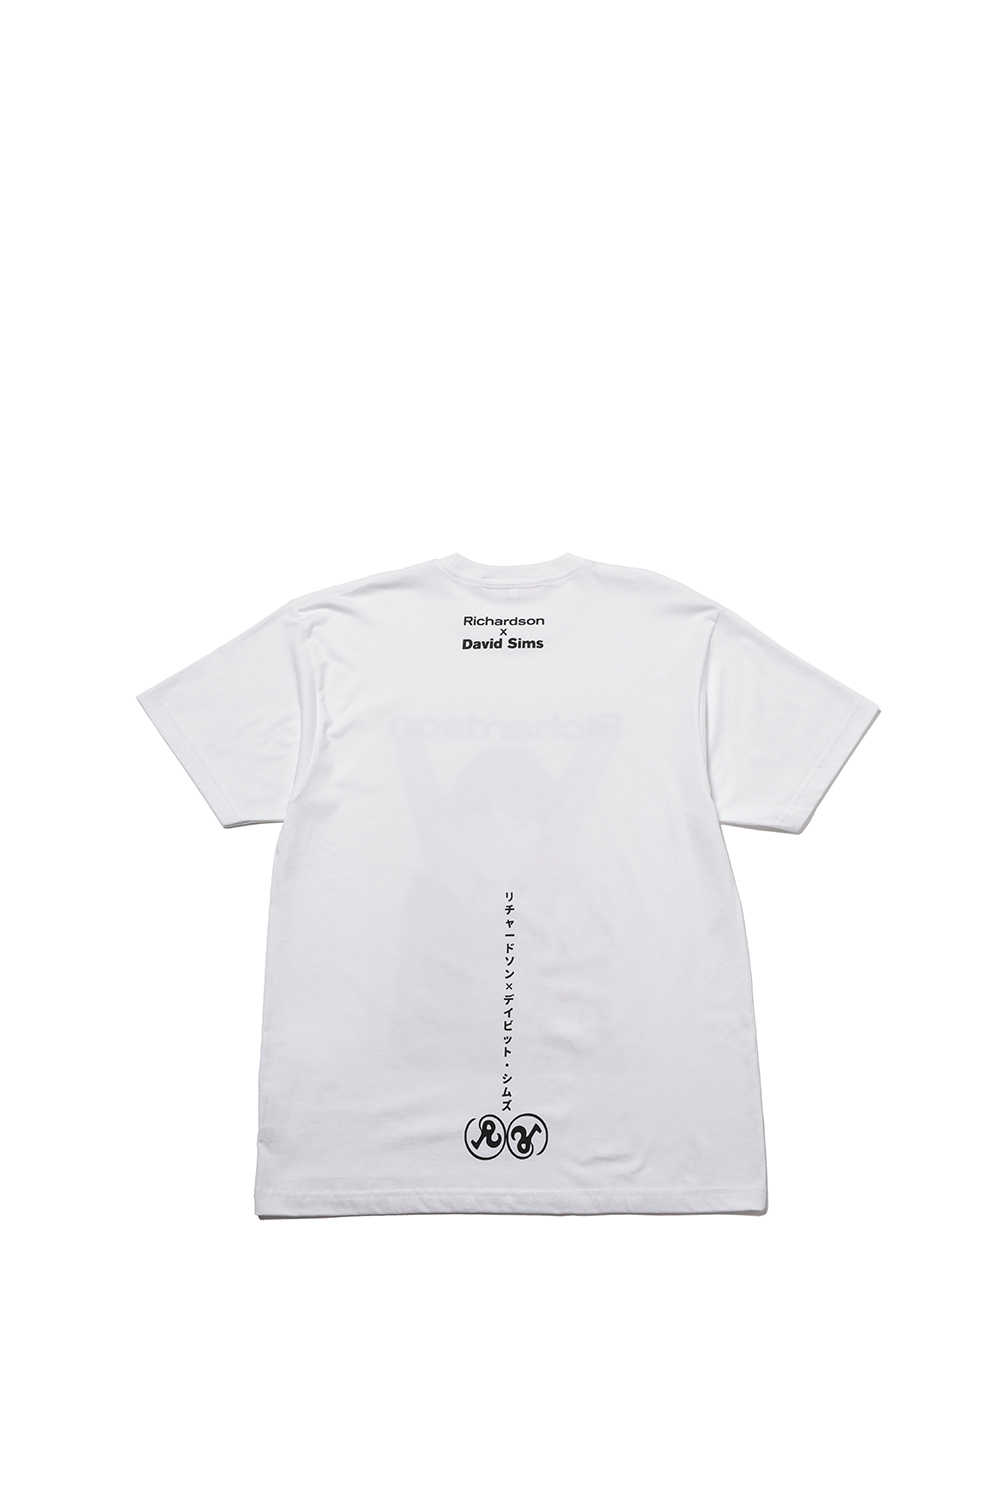 Richardson × David SimsのコラボレーションTシャツ